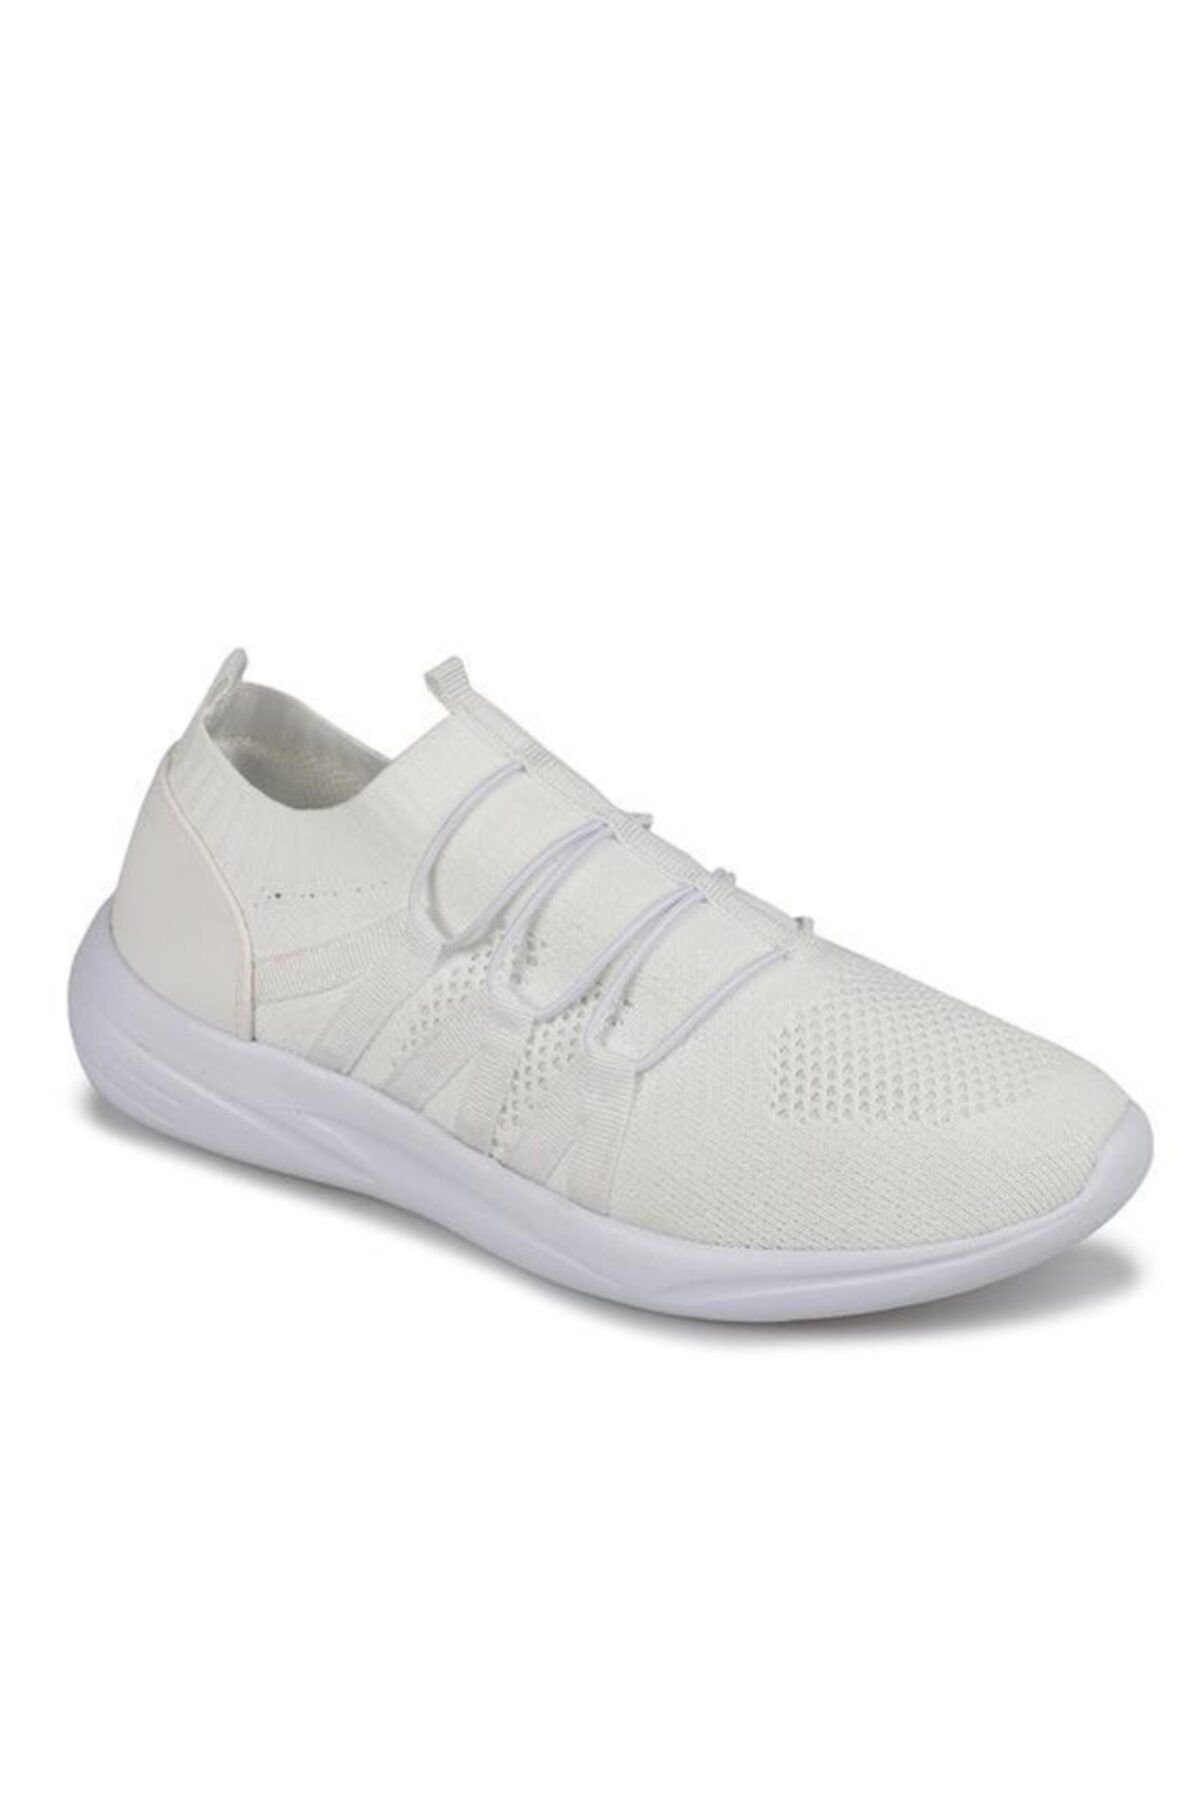 Dunlop Unisex Beyaz Spor Ayakkabı